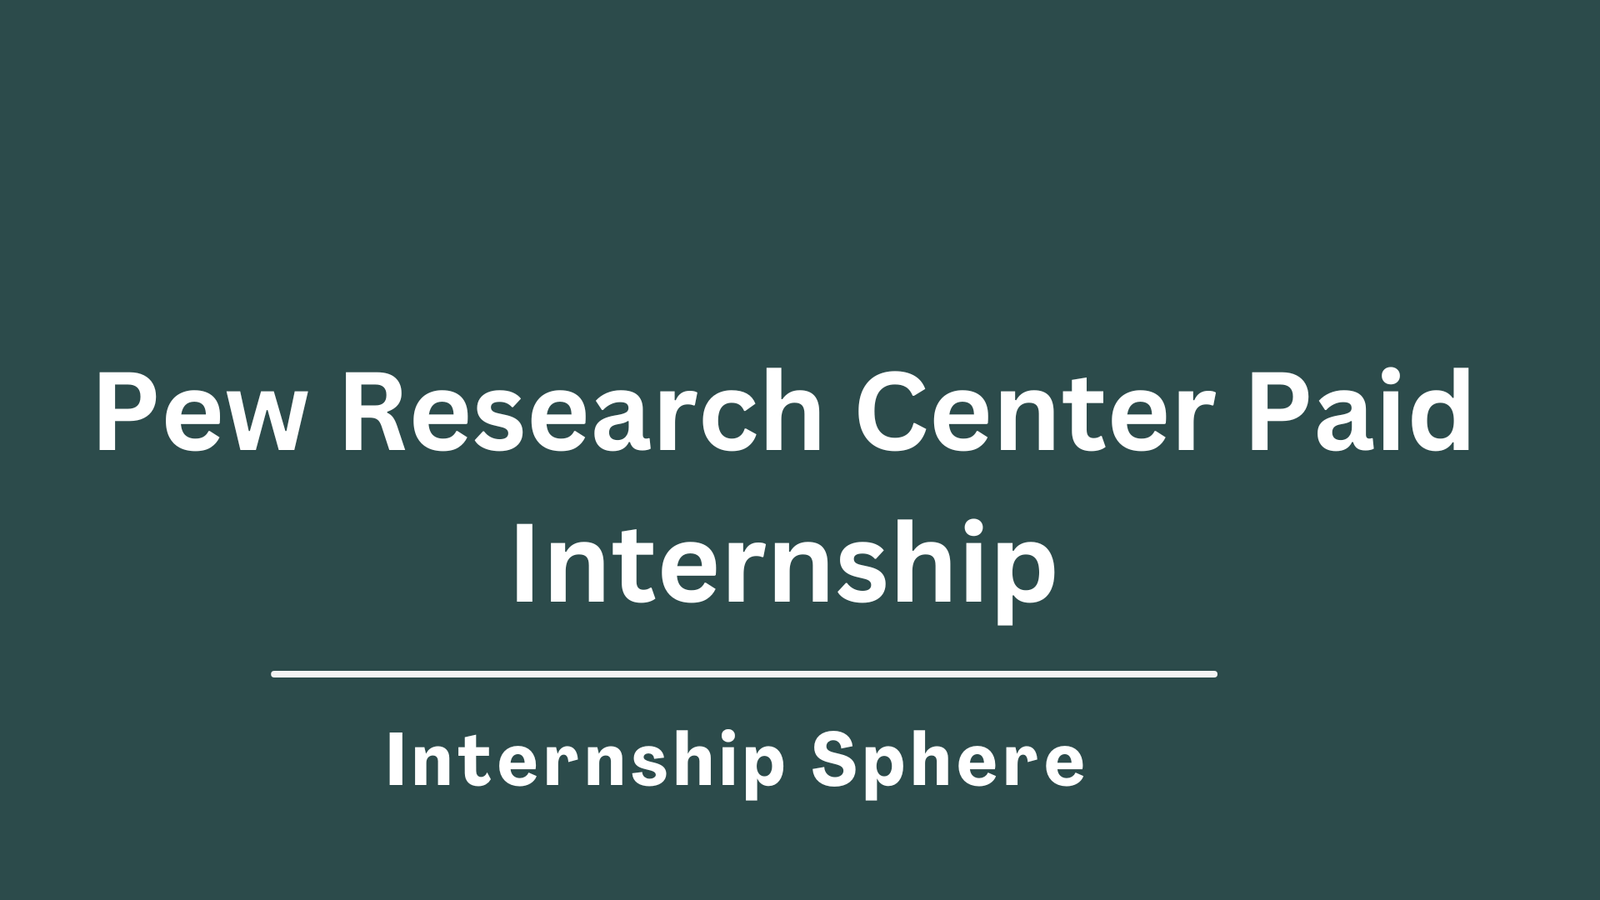 Pew Research Center Internship